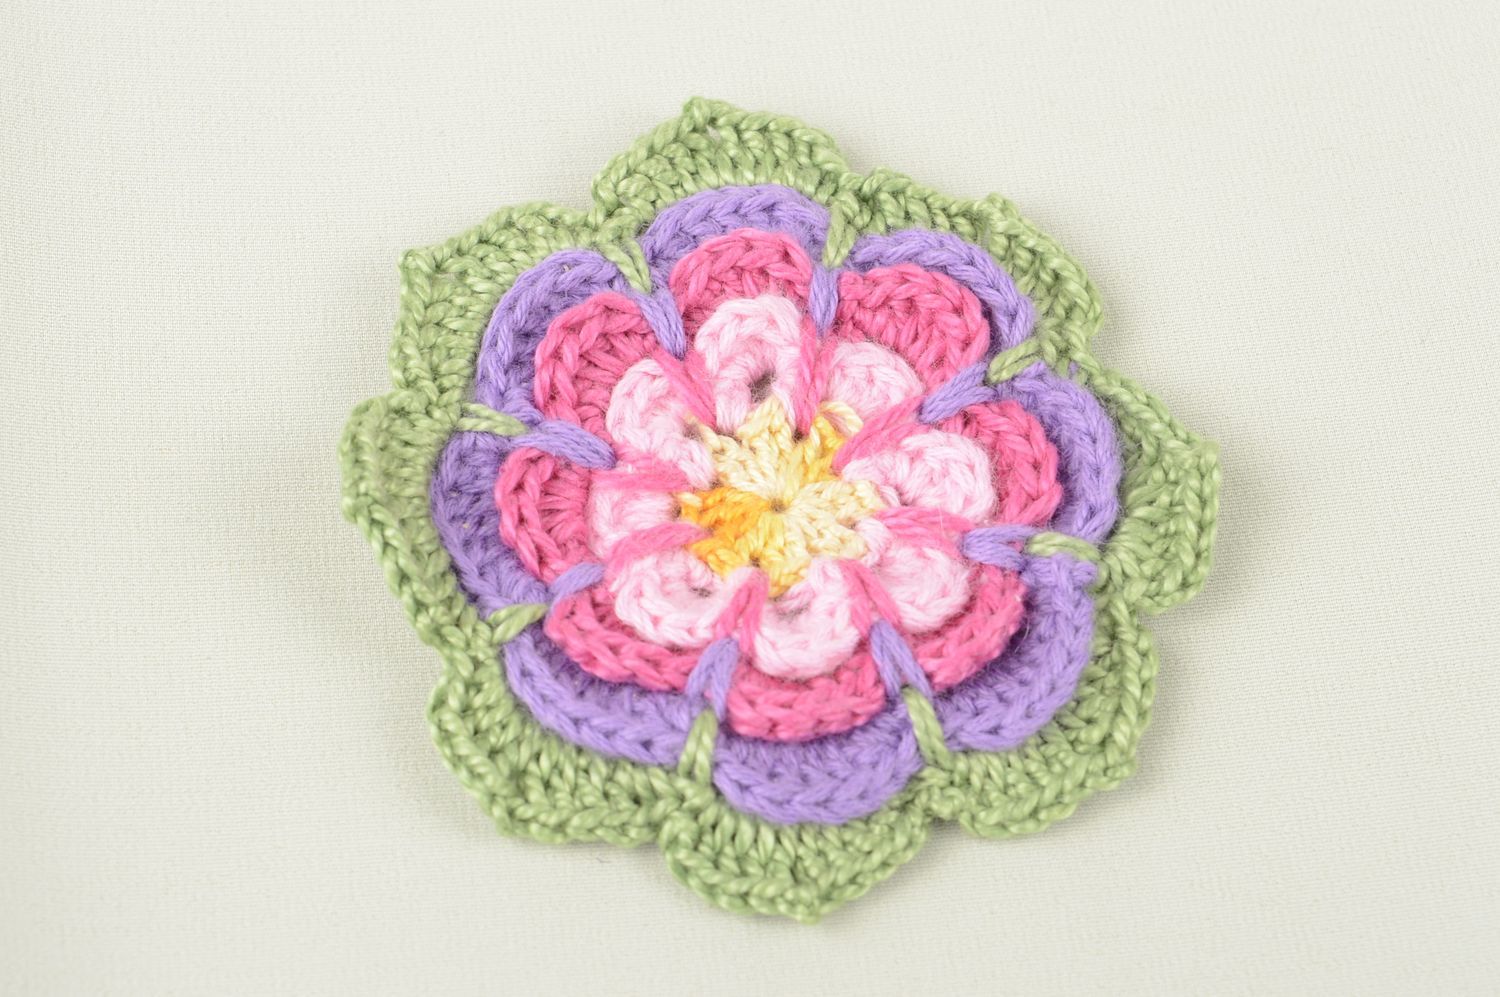 Handmade textile tender flower unusual fittings for brooch unusual blank photo 1